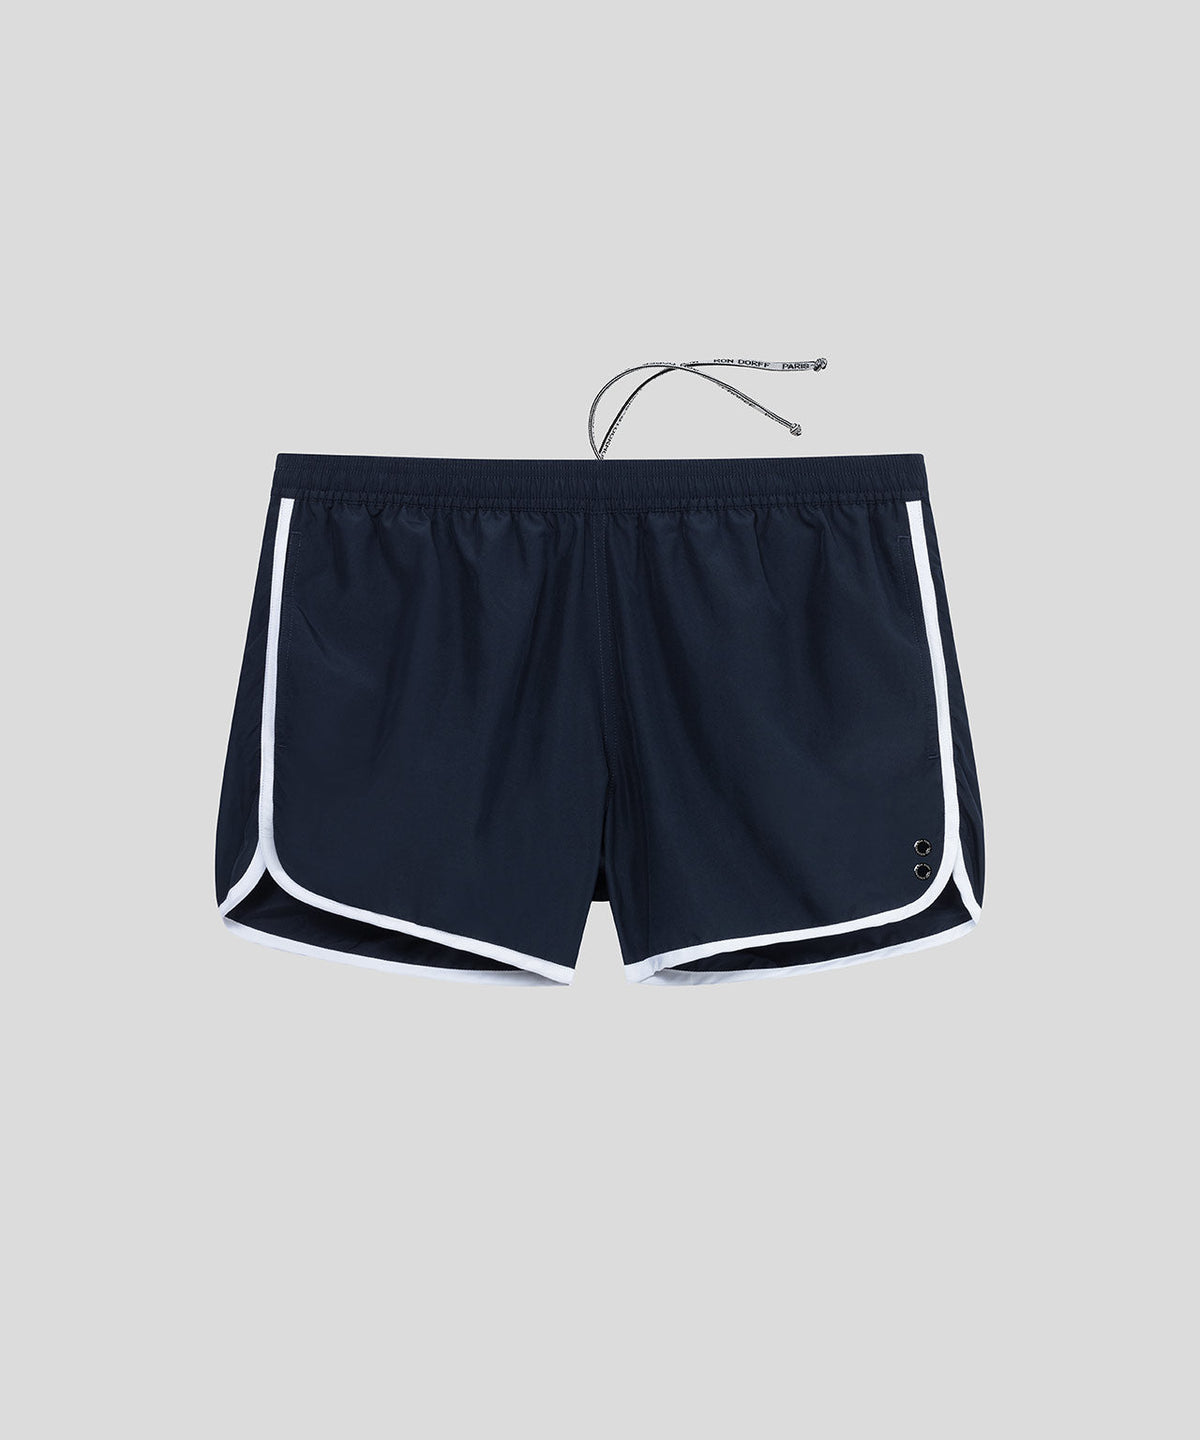 Recycled Polyester Marathon Swim Shorts: Navy